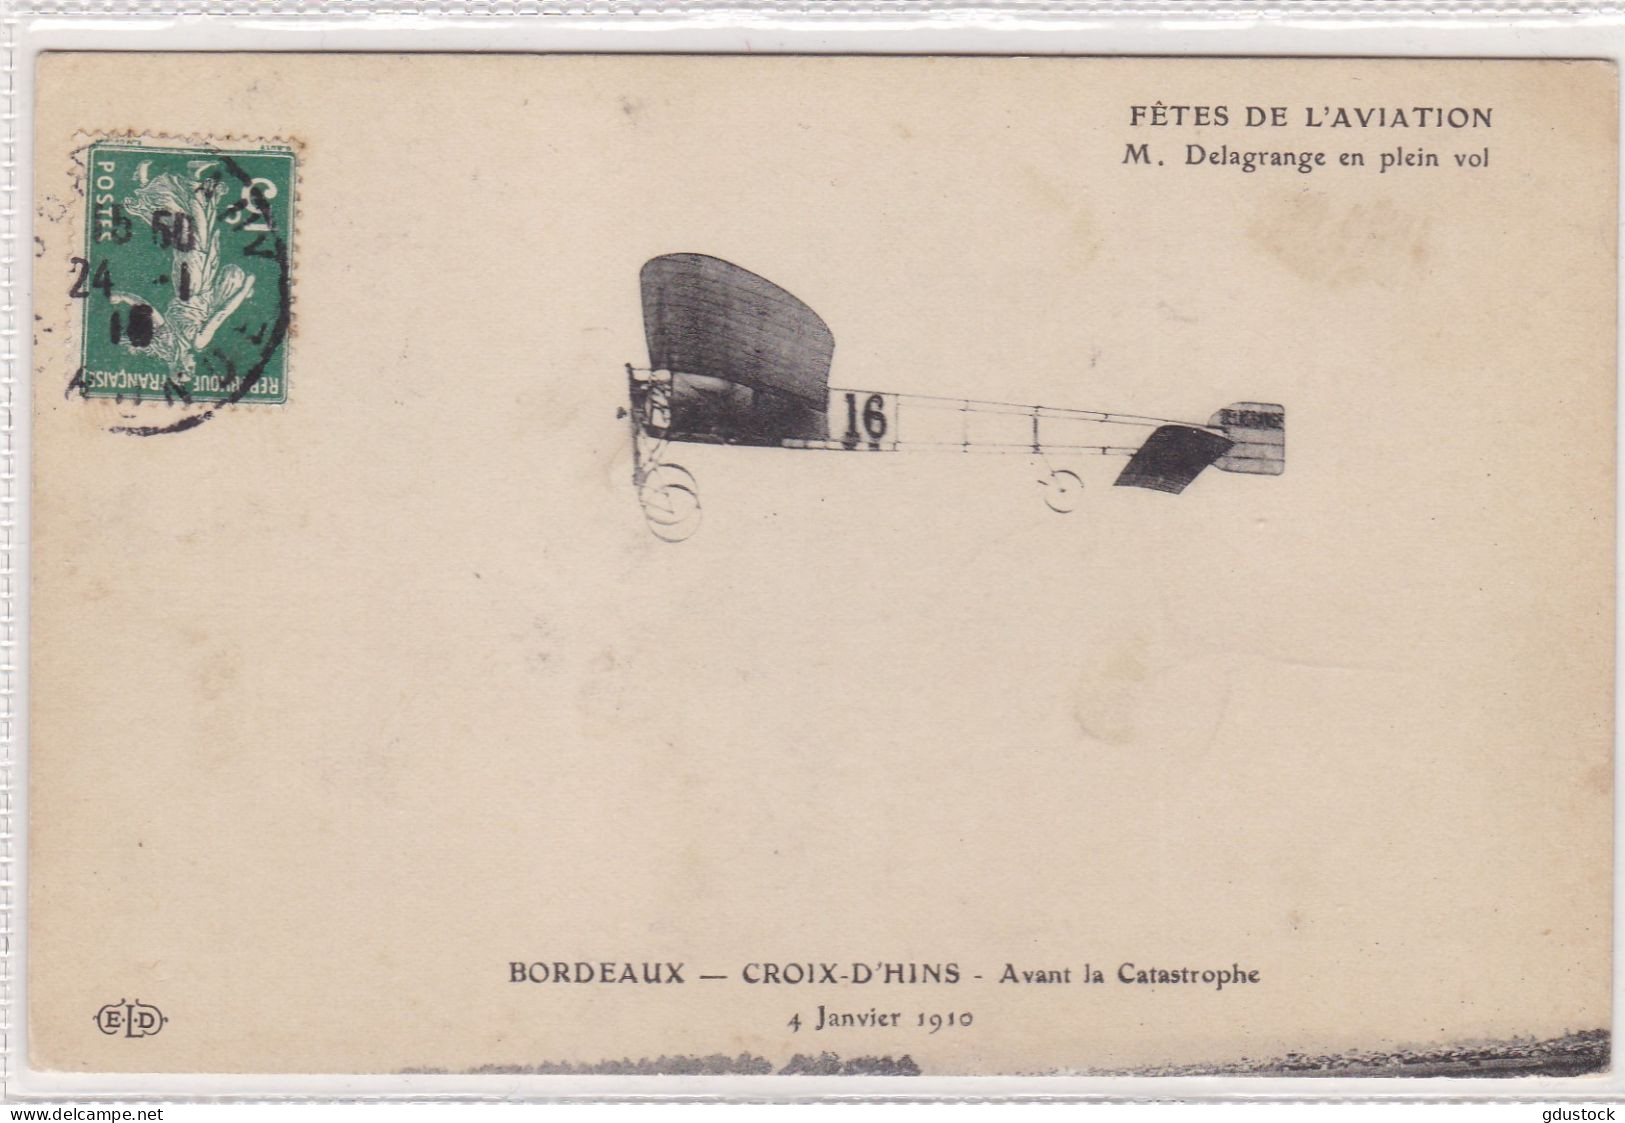 Fêtes De L'Aviation - M. Delagrange En Plein Vol - Bordeaux - Croix D'Hins - Avant La Catastrophe 4 Janvier 1910 - Airmen, Fliers